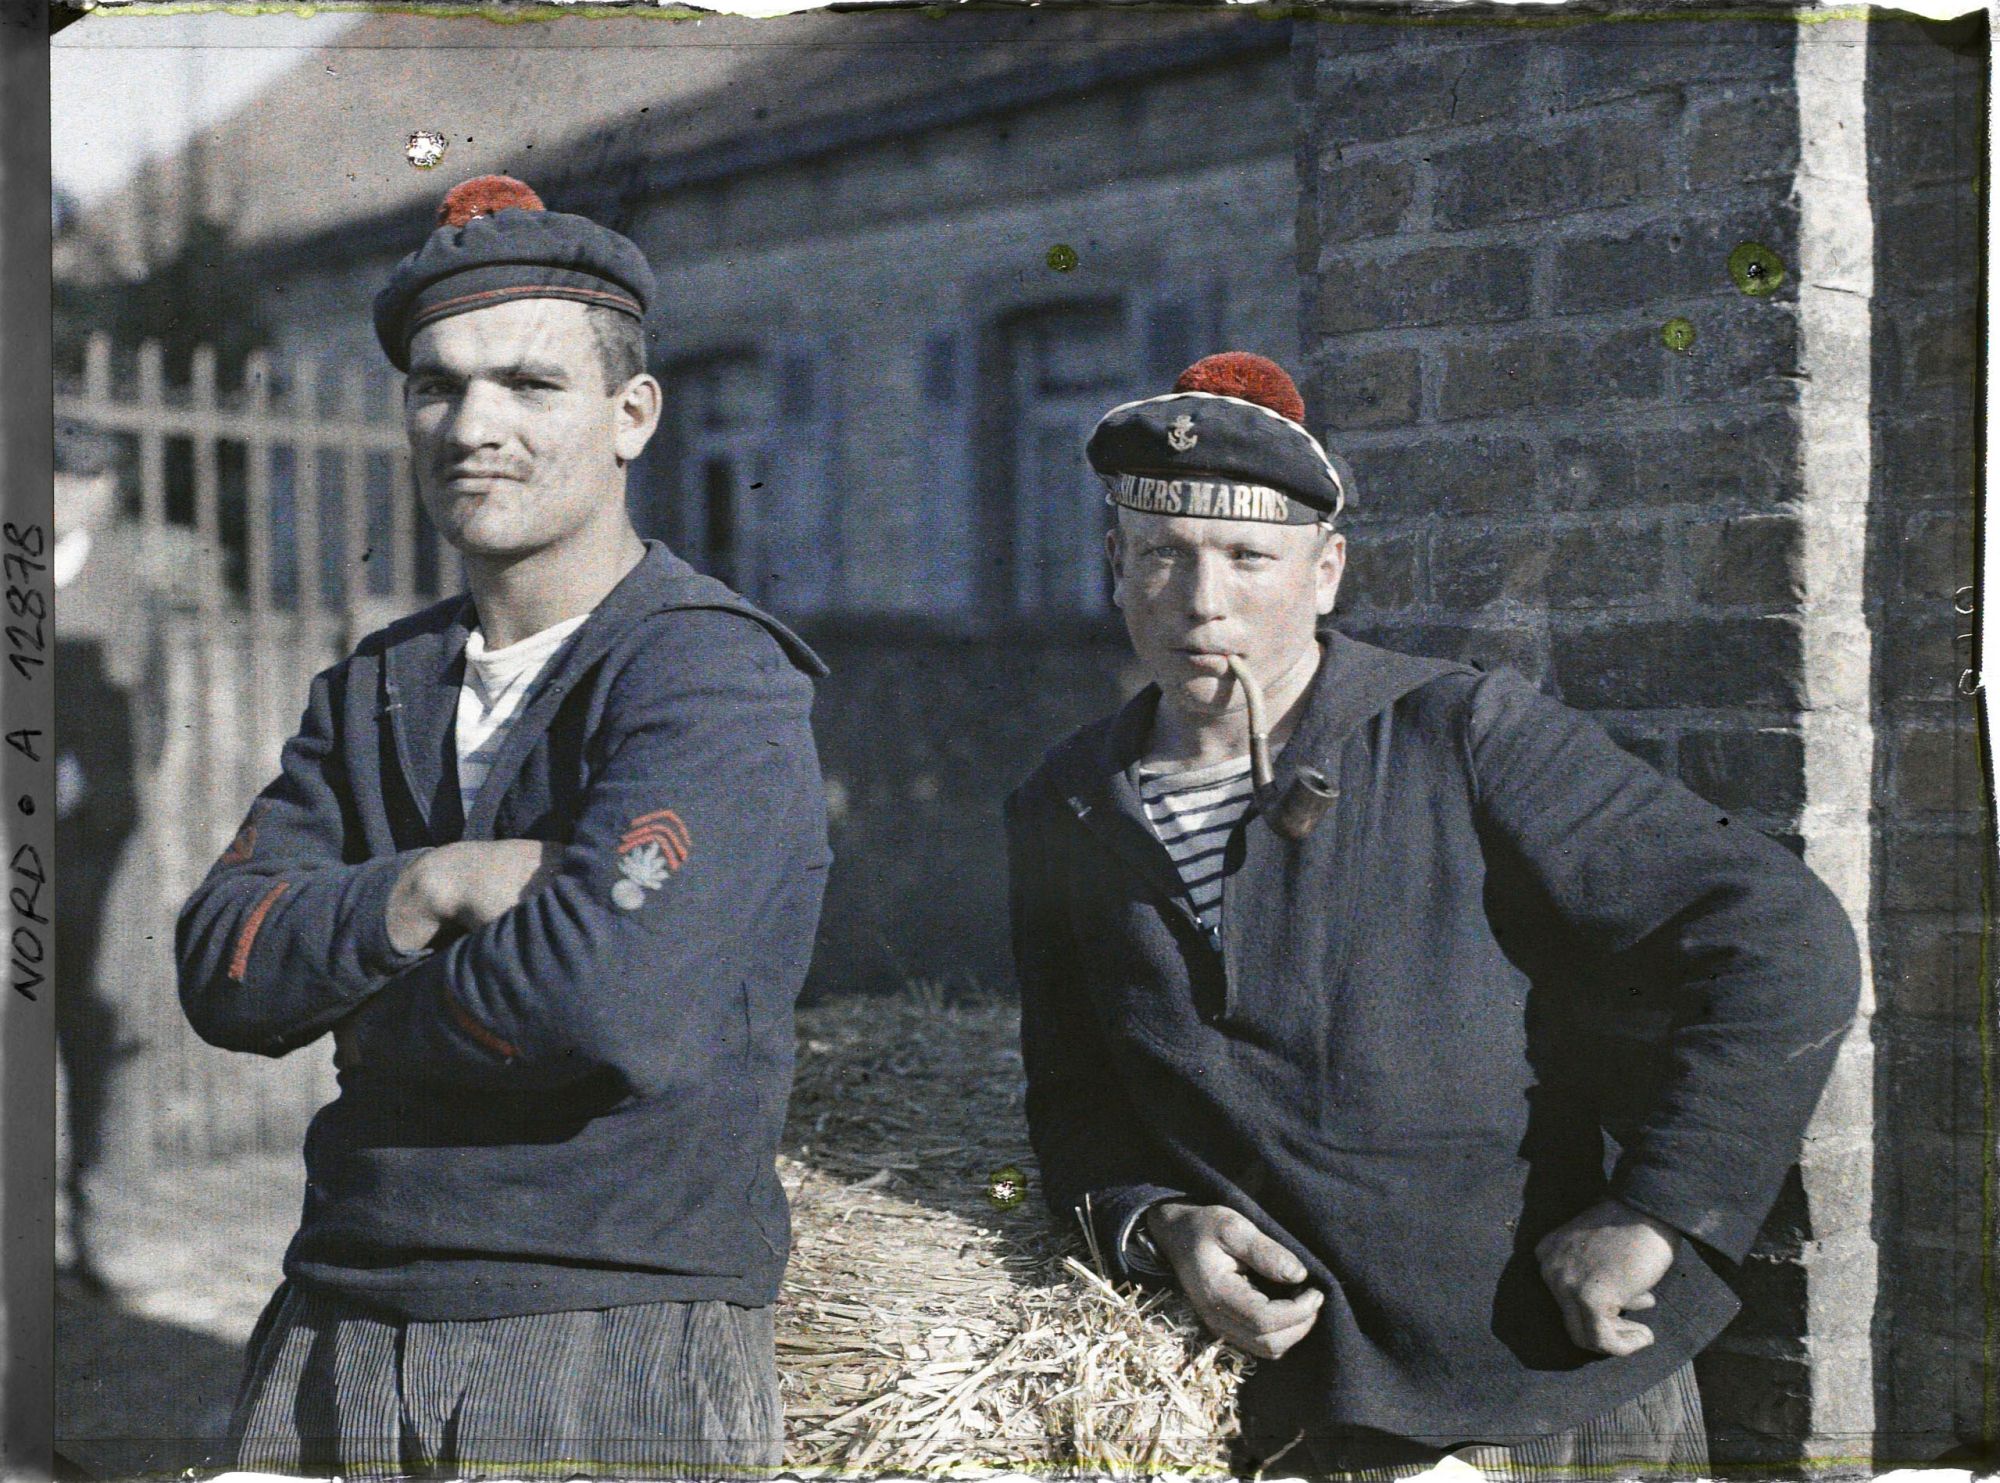 Cliché de la série originale, deux fusiliers marins, Dunkerque, 03/09/1917.